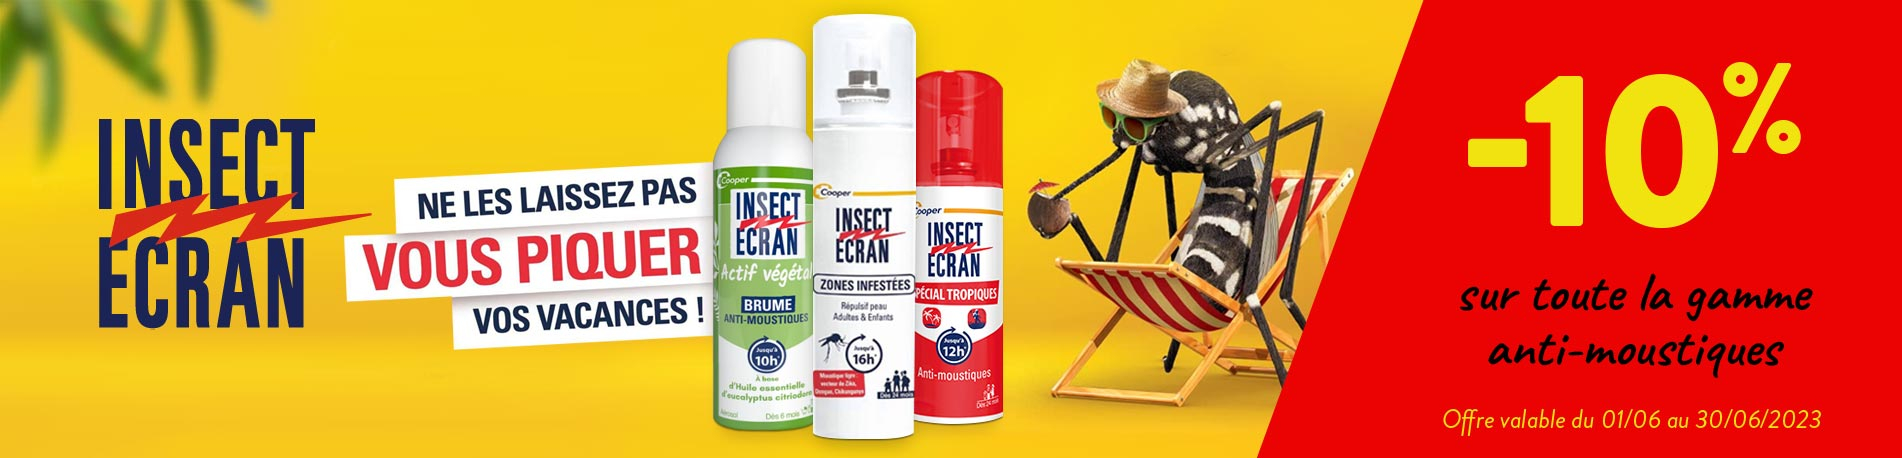 Promotion Insect écran